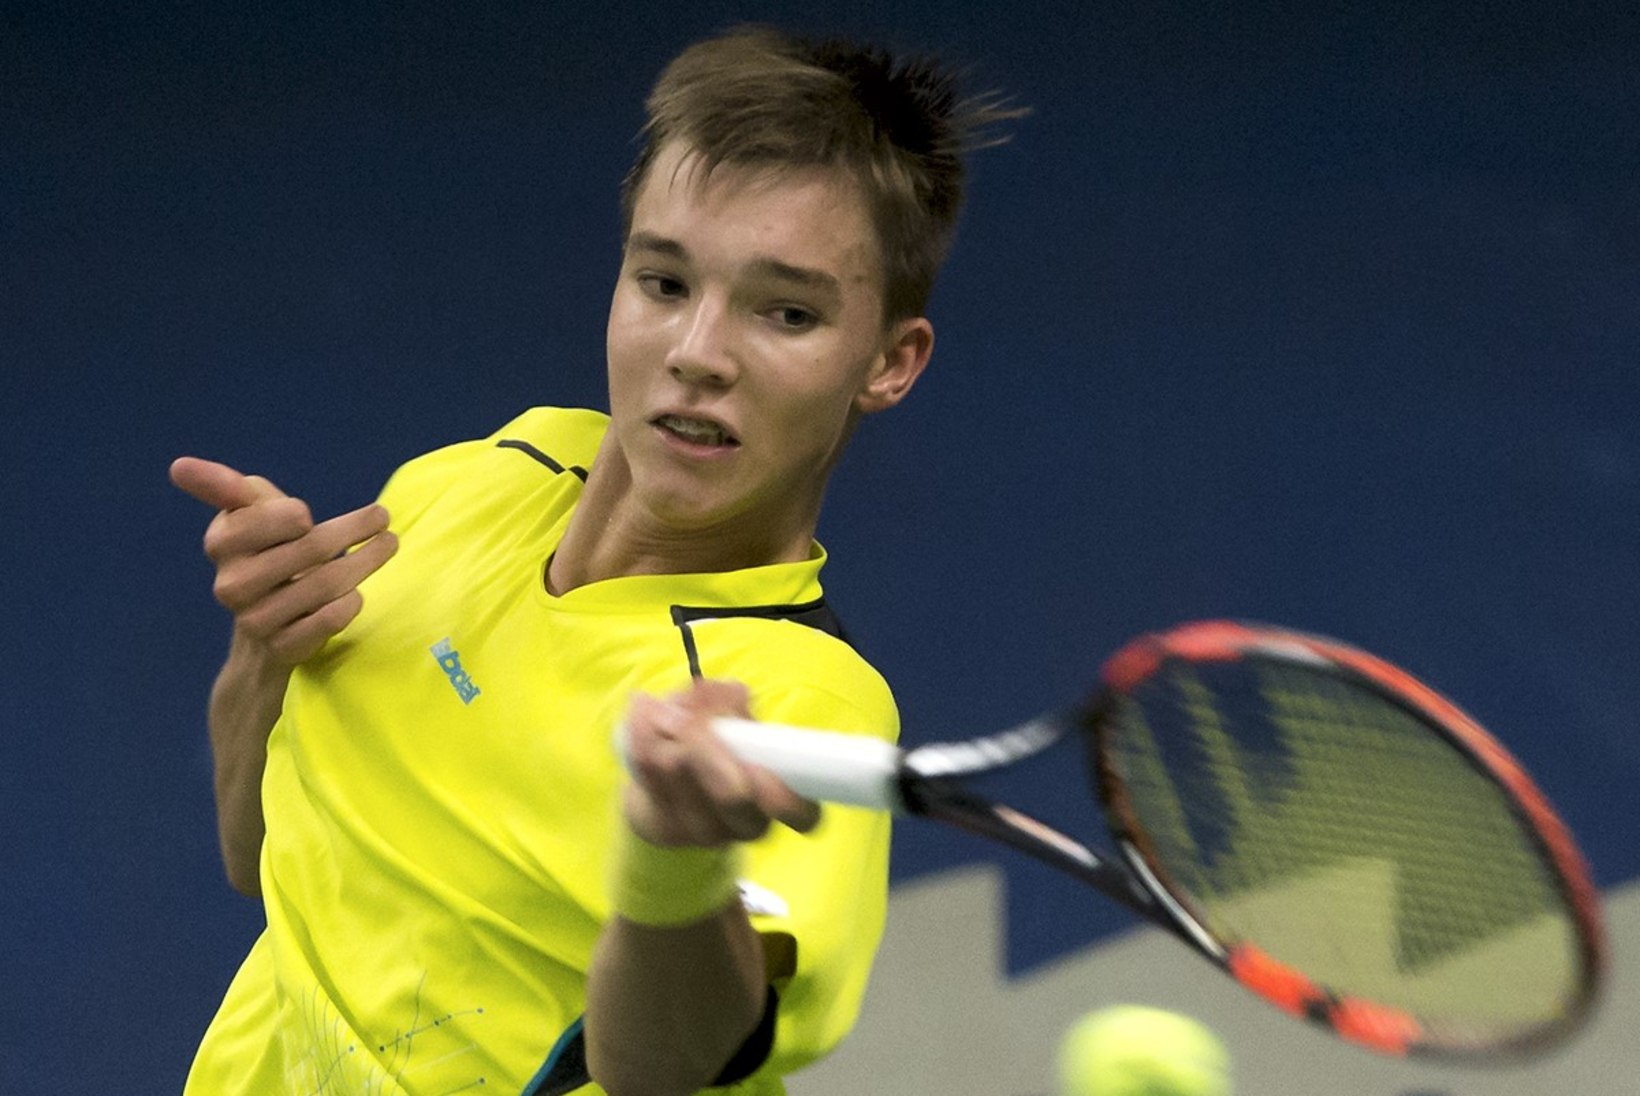 VÄGEV! 17aastane tenniselootus jõudis kodusel turniiril finaali